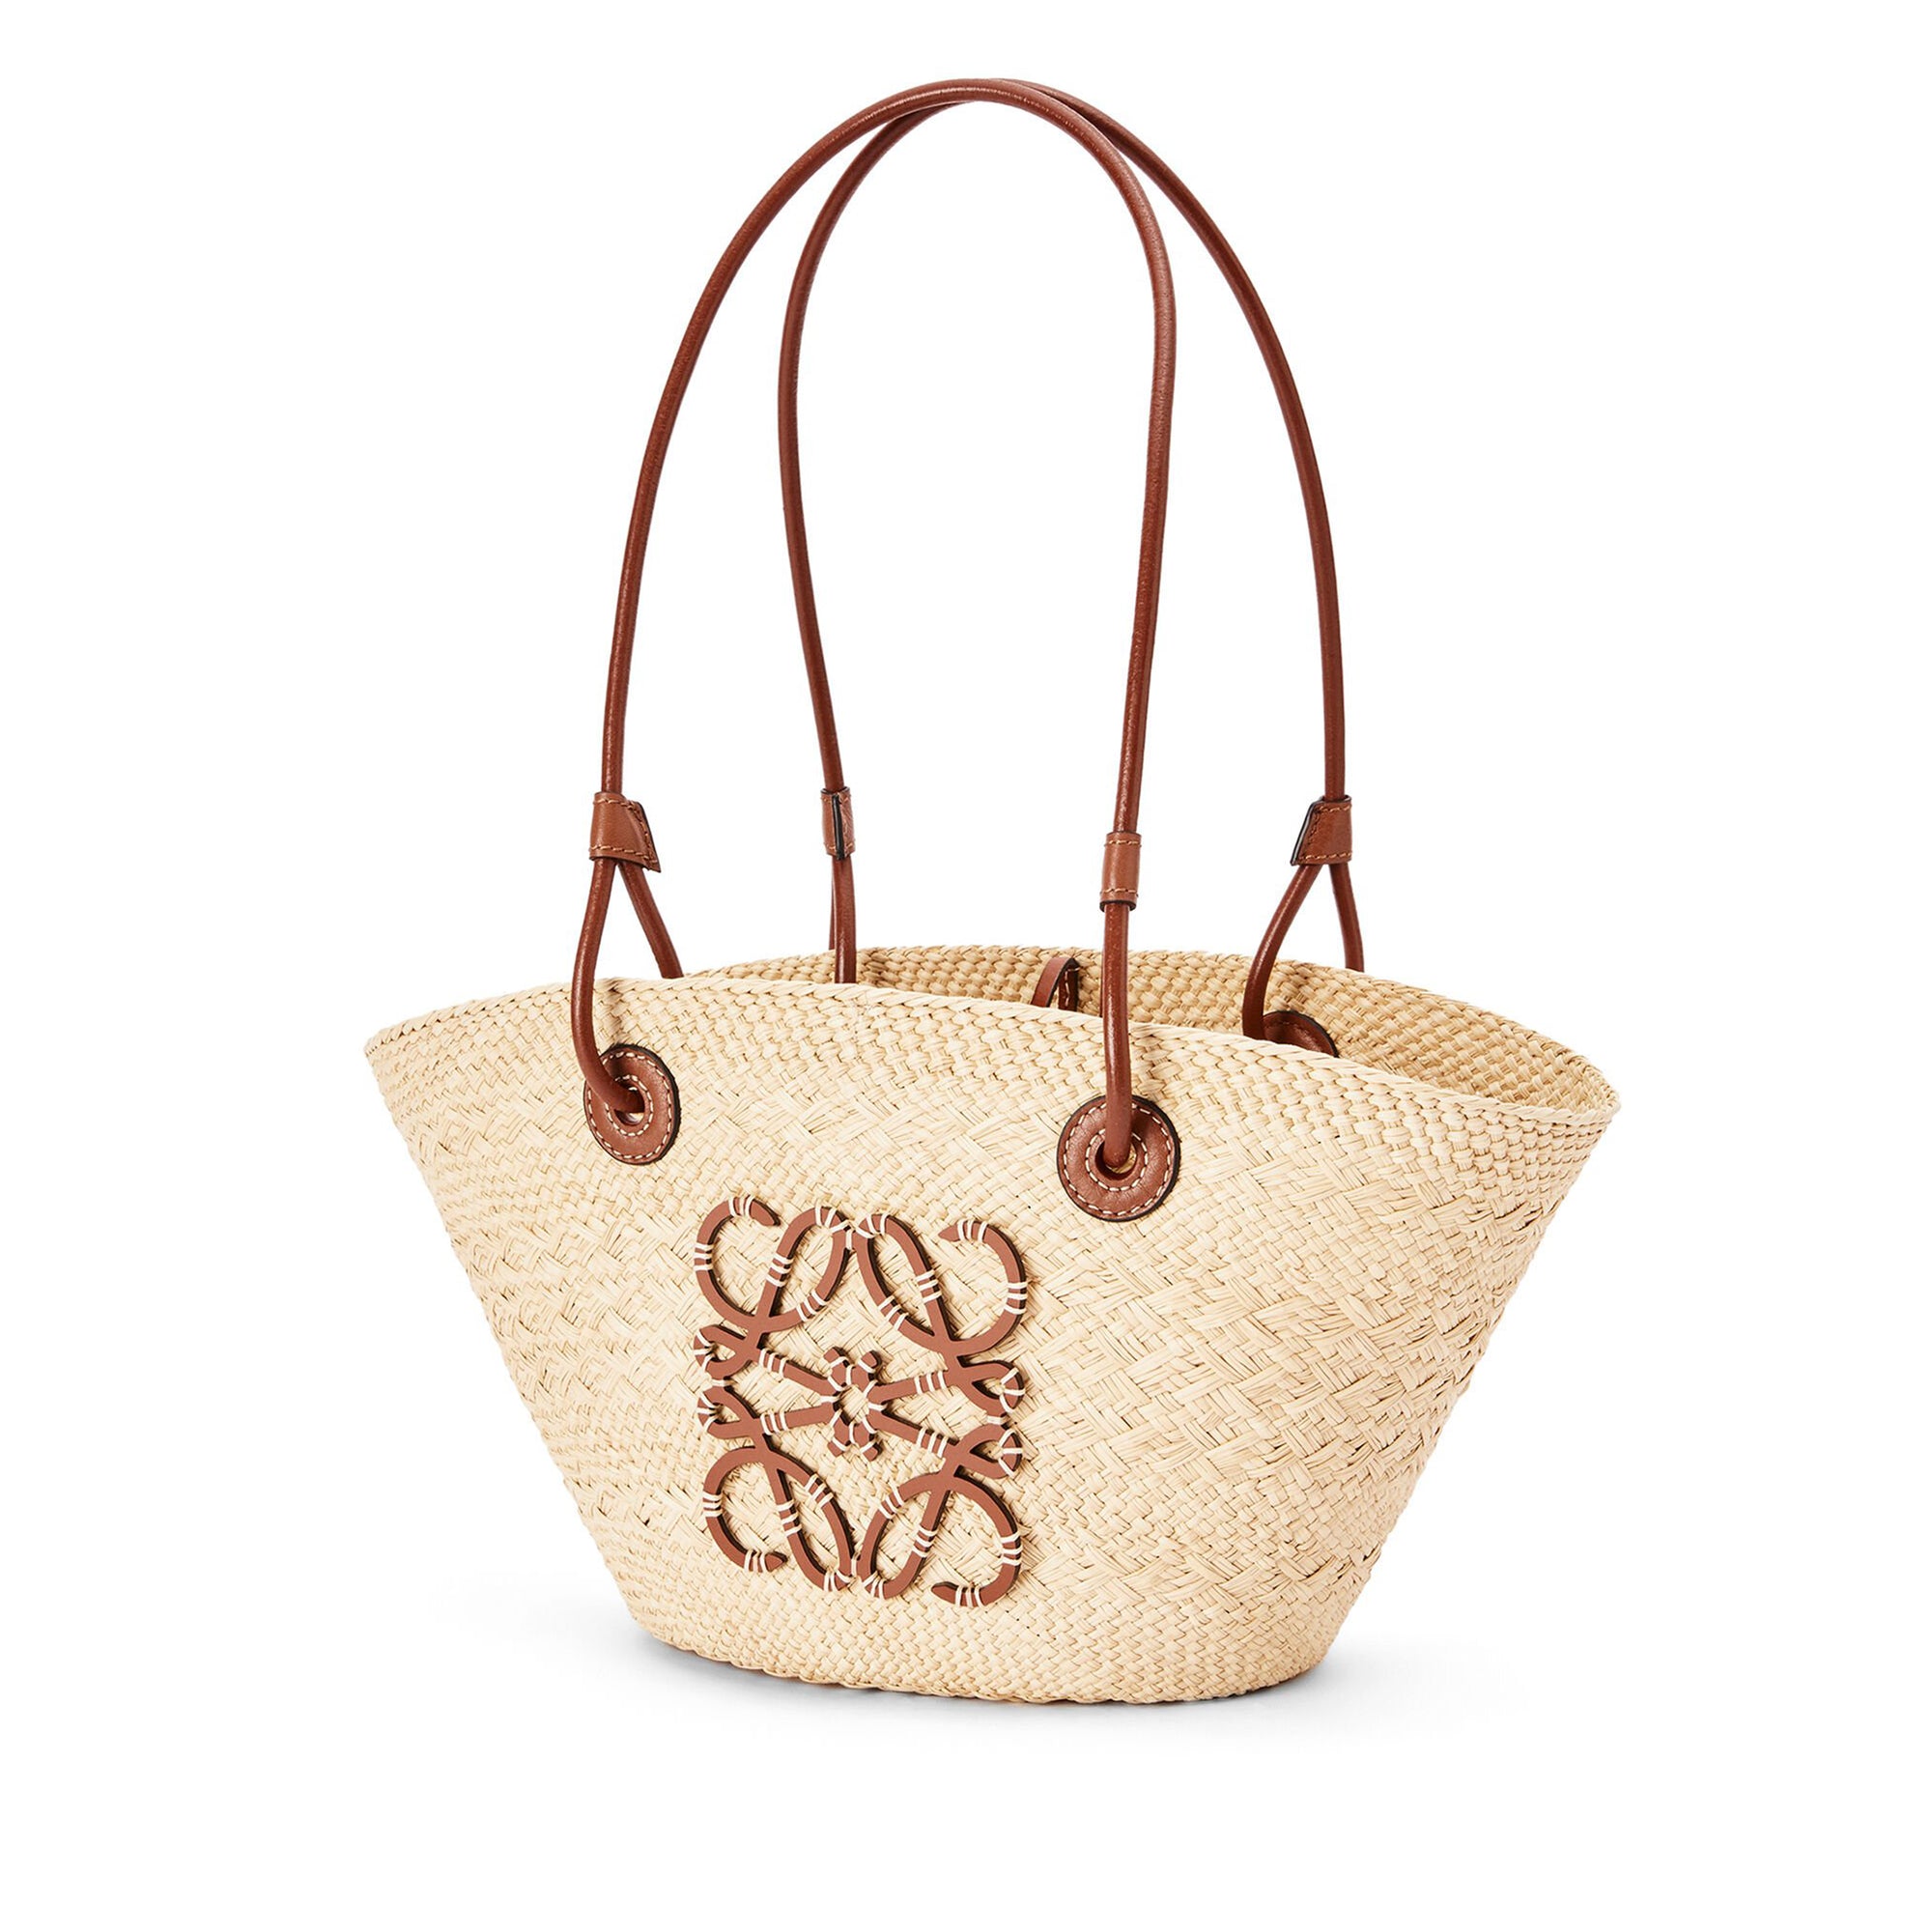 Loewe - Women’s Anagram Basket Small Bag - (Natural/Tan) view 3